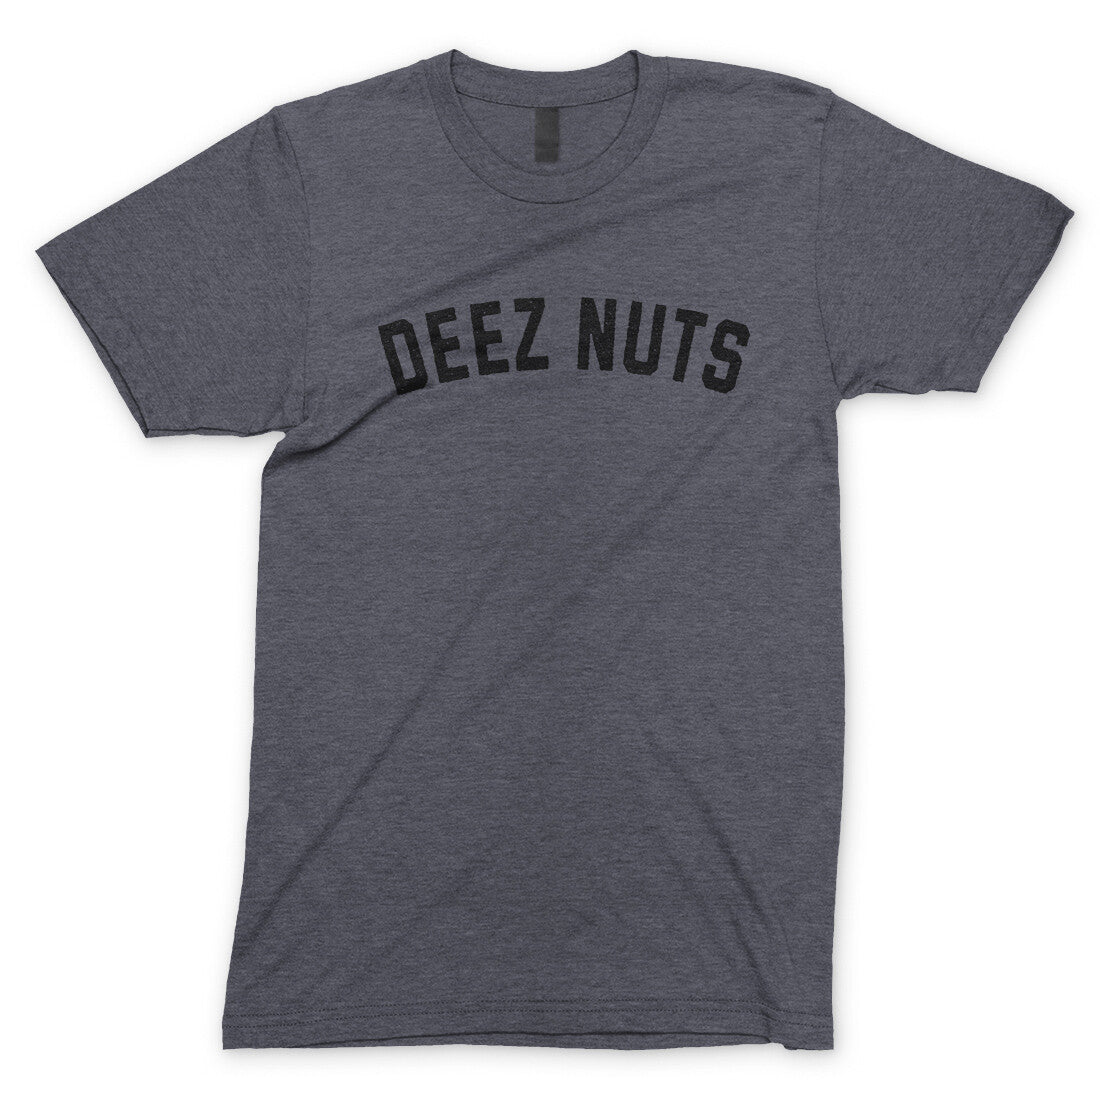 Deez Nuts in Dark Heather Color